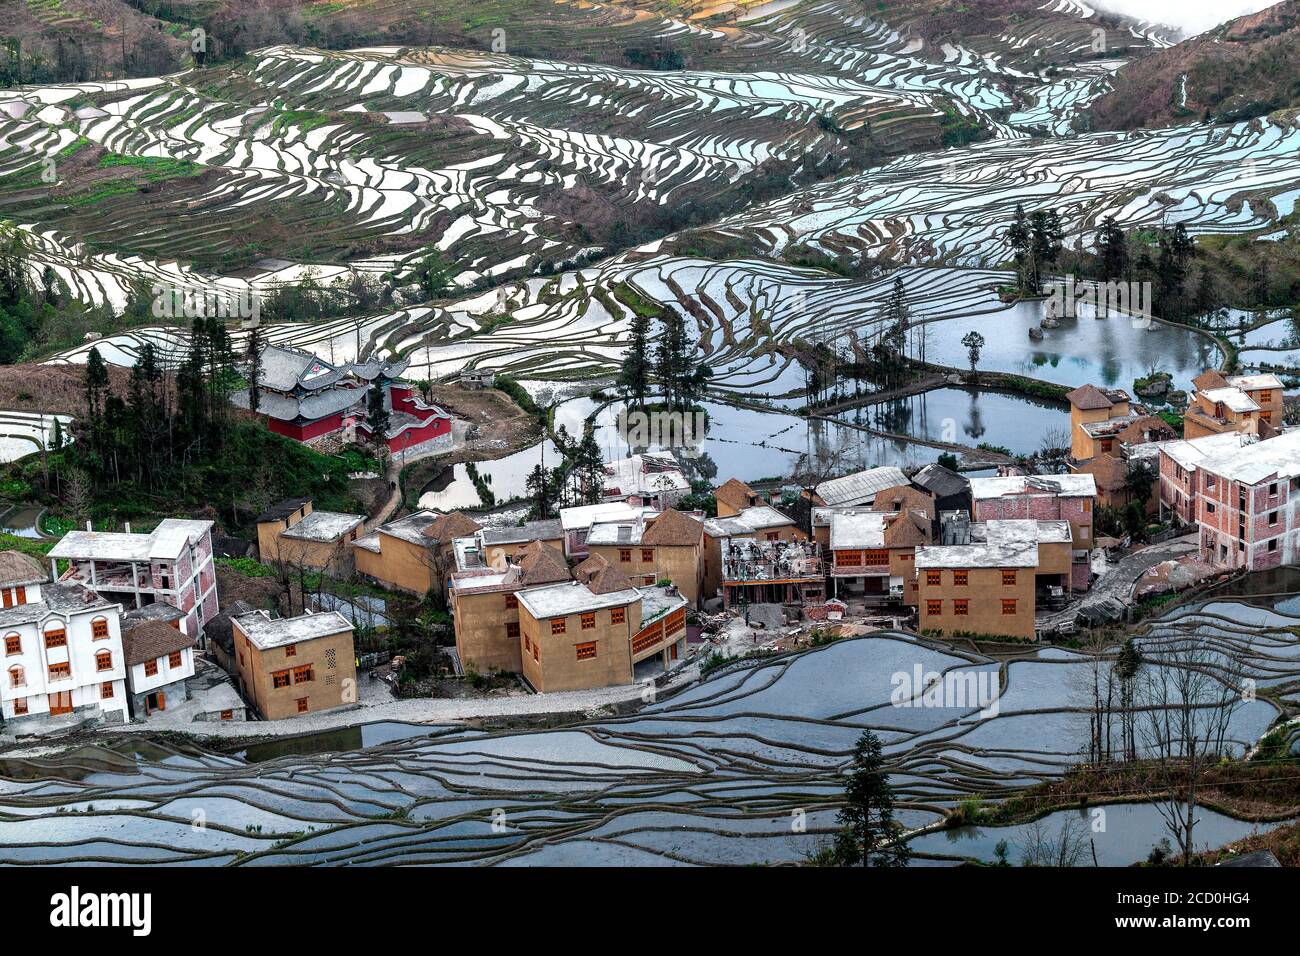 Alba sulle terrazze di riso di Yuanyang, sud della provincia dello Yunnan in Cina. In inverno, le terrazze sono allagate, dando bella riflessioni nell'acqua. Foto Stock